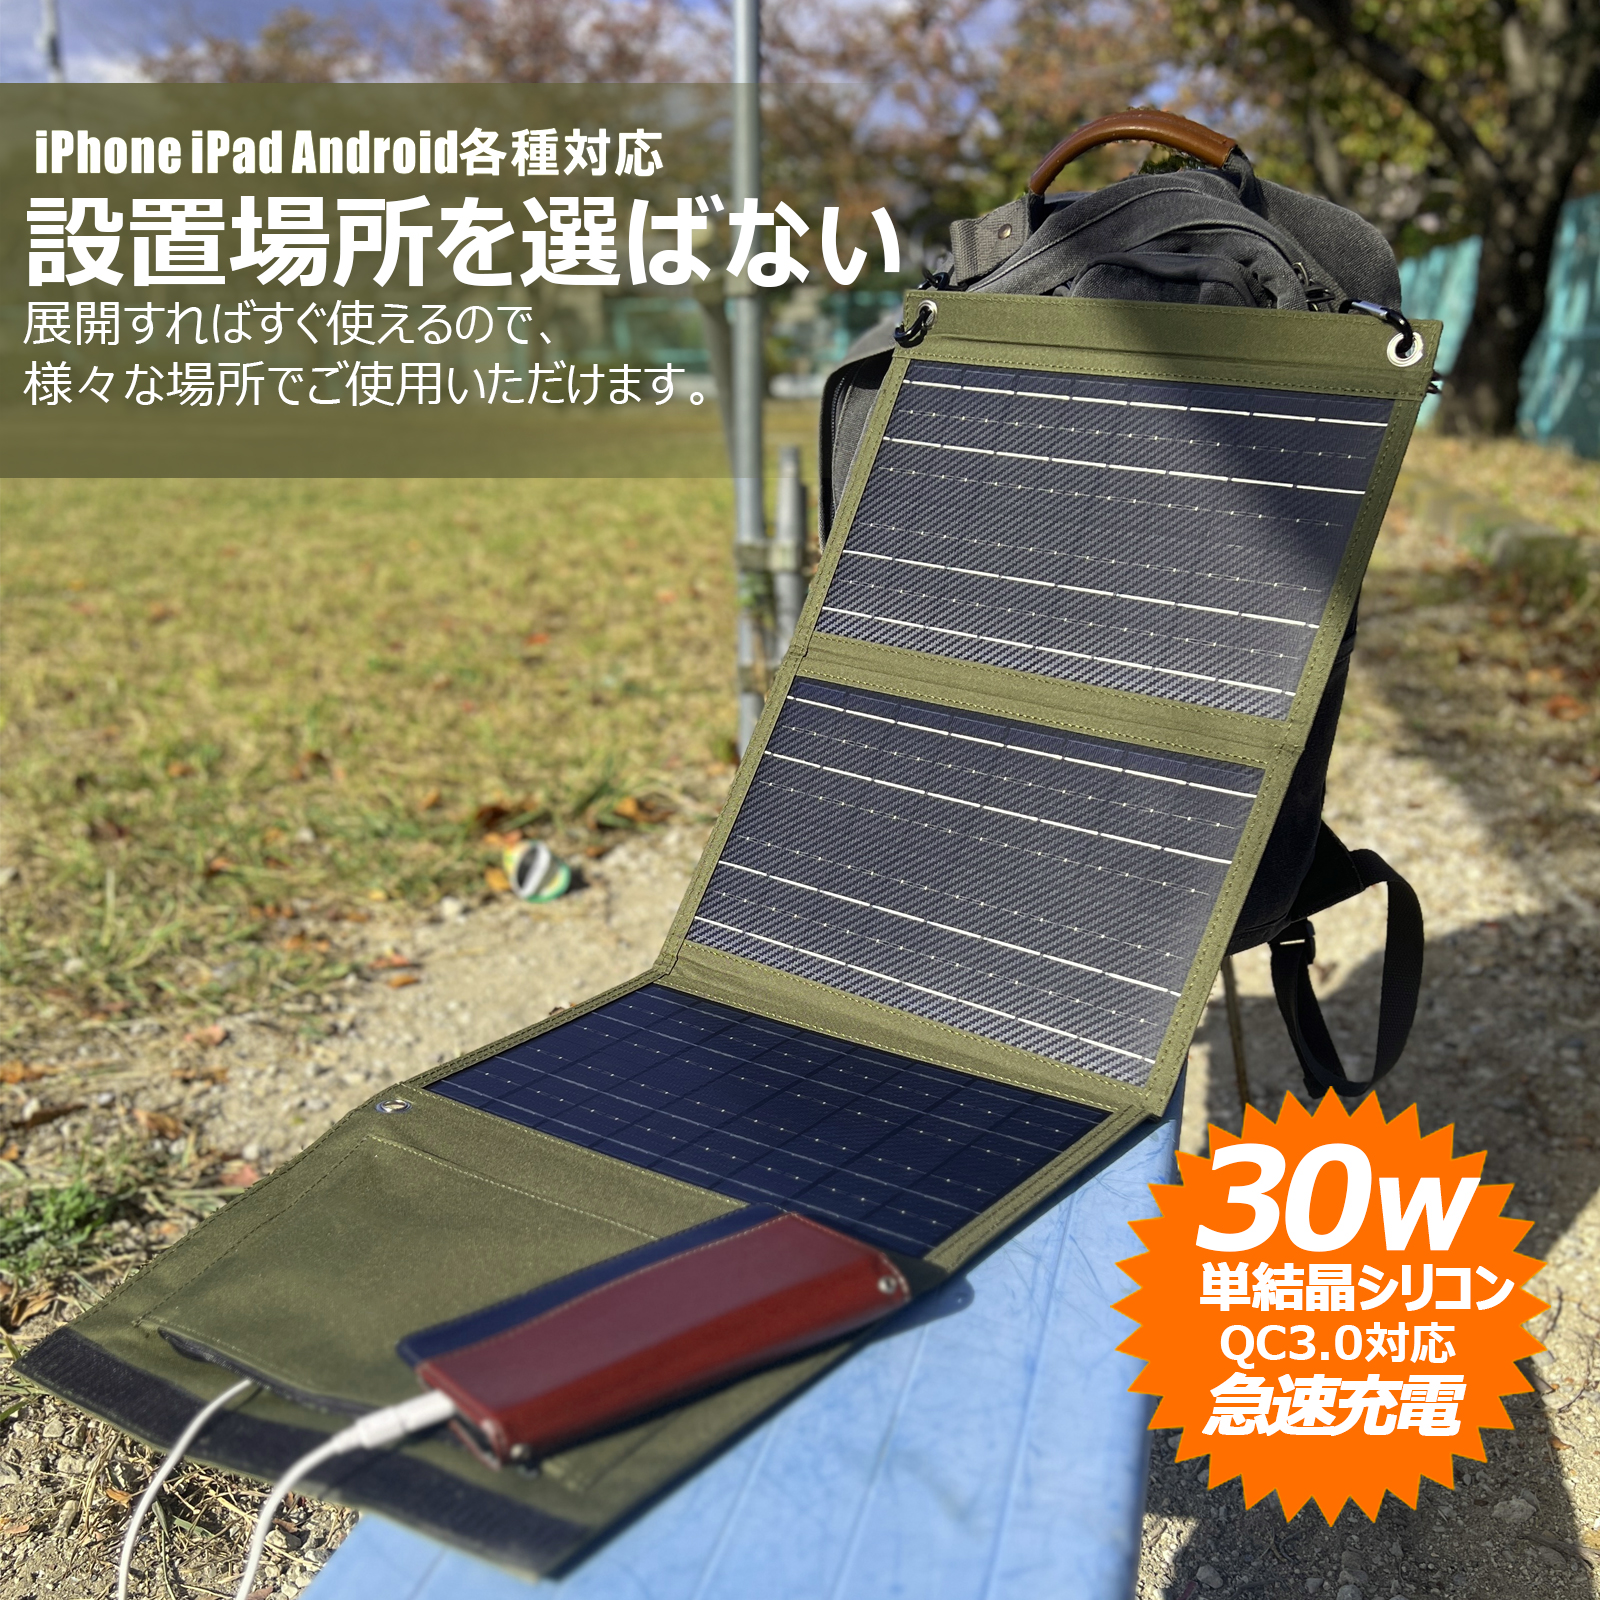 セール 30W ソーラーパネル 充電器 携帯型 小型 太陽光パネル 単結晶 